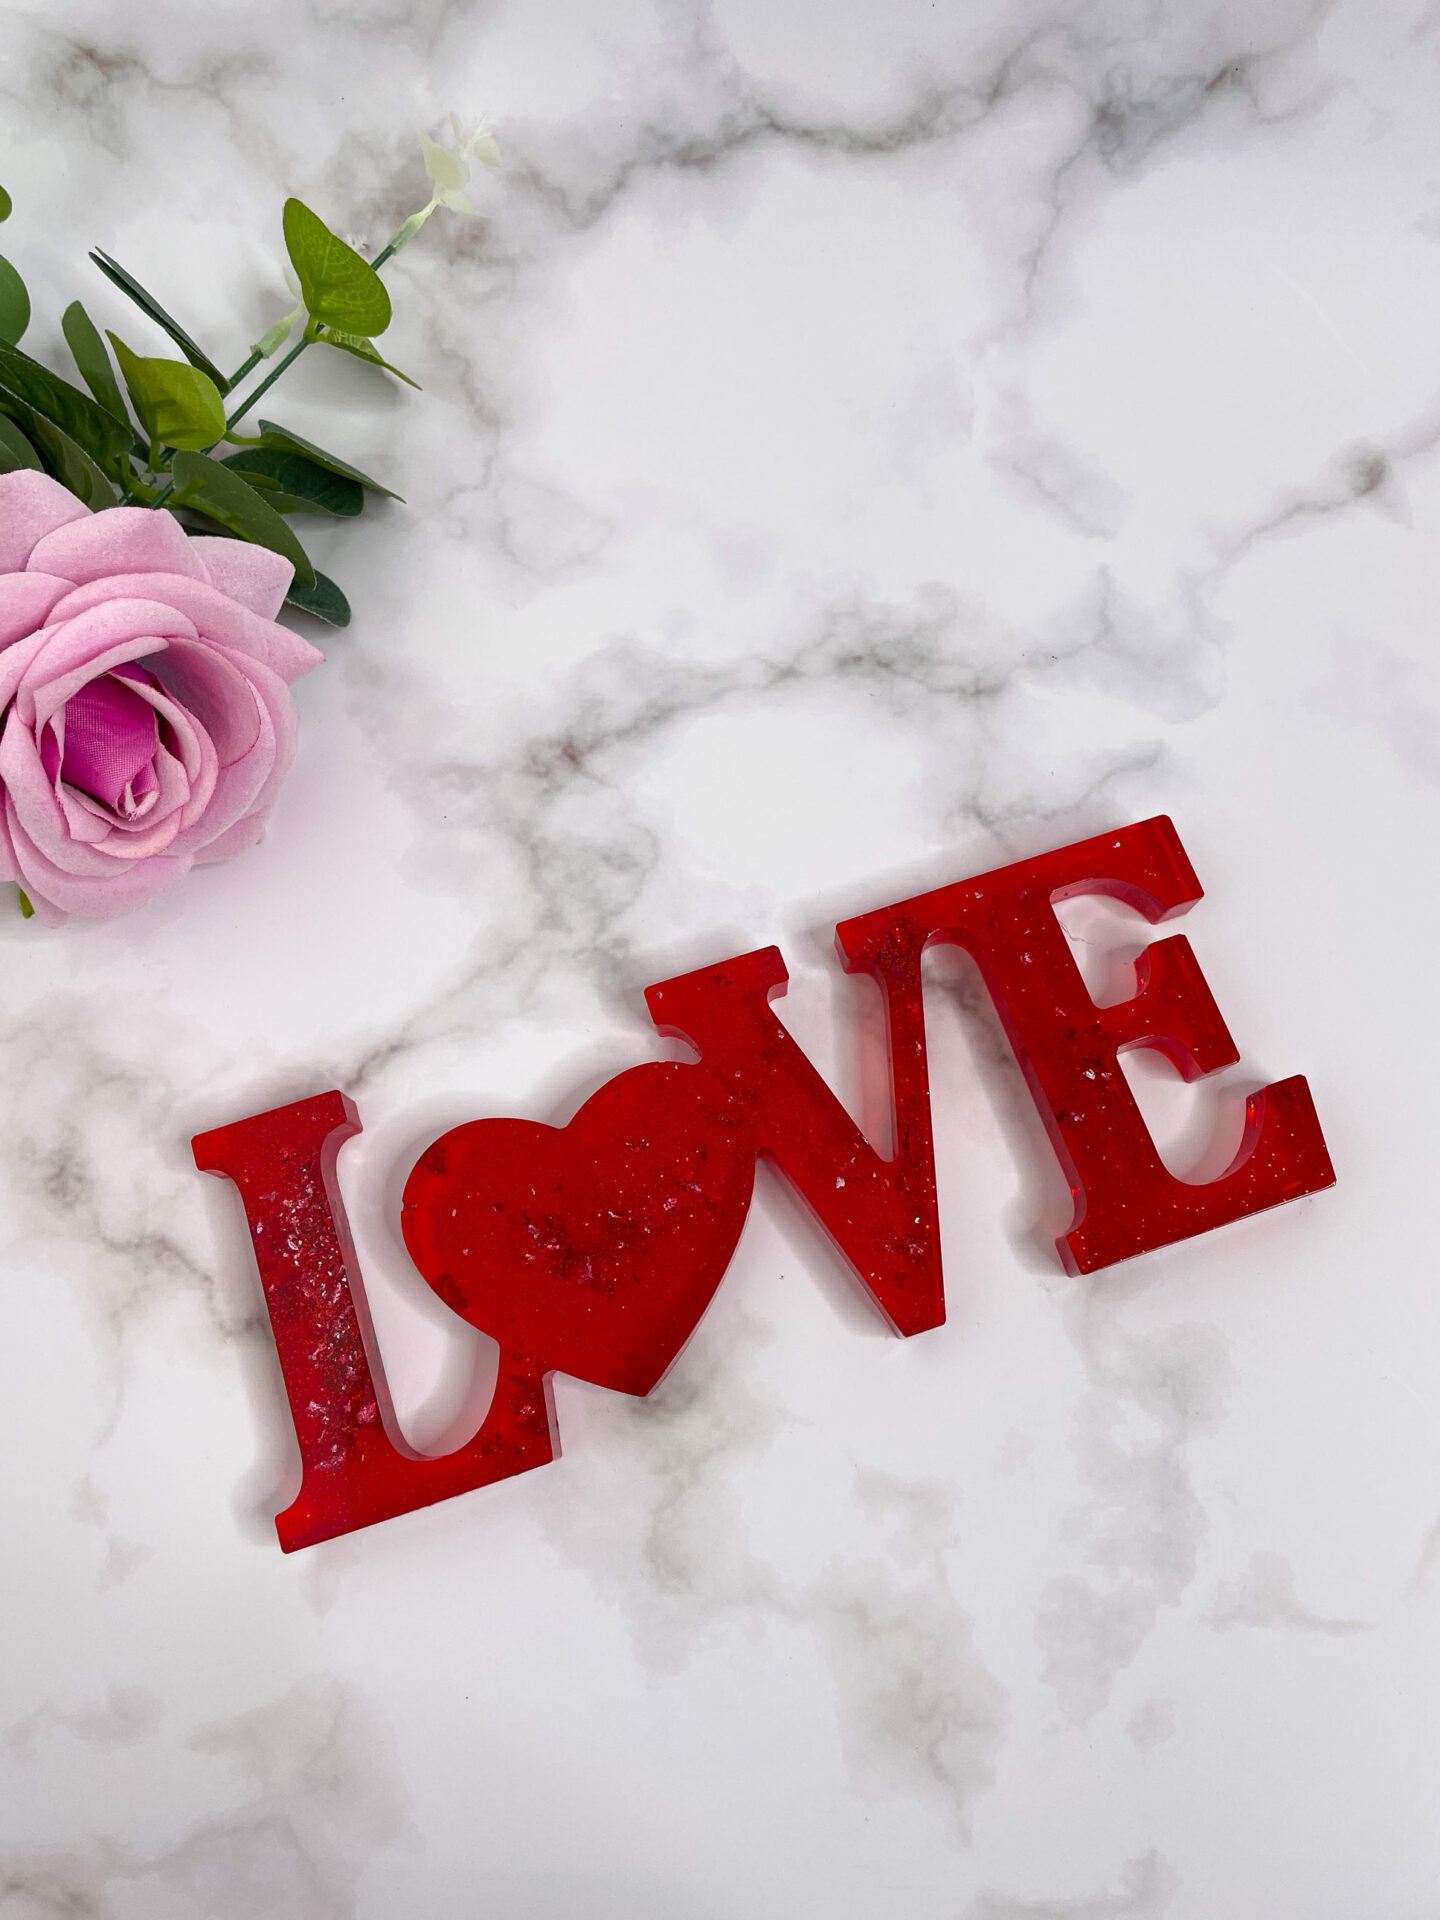 Mot décoratifs en résine - Love - rouge - idées cadeaux pour la saint valentin - boutique idées cadeaux - boutique en ligne - création française et artisanale.